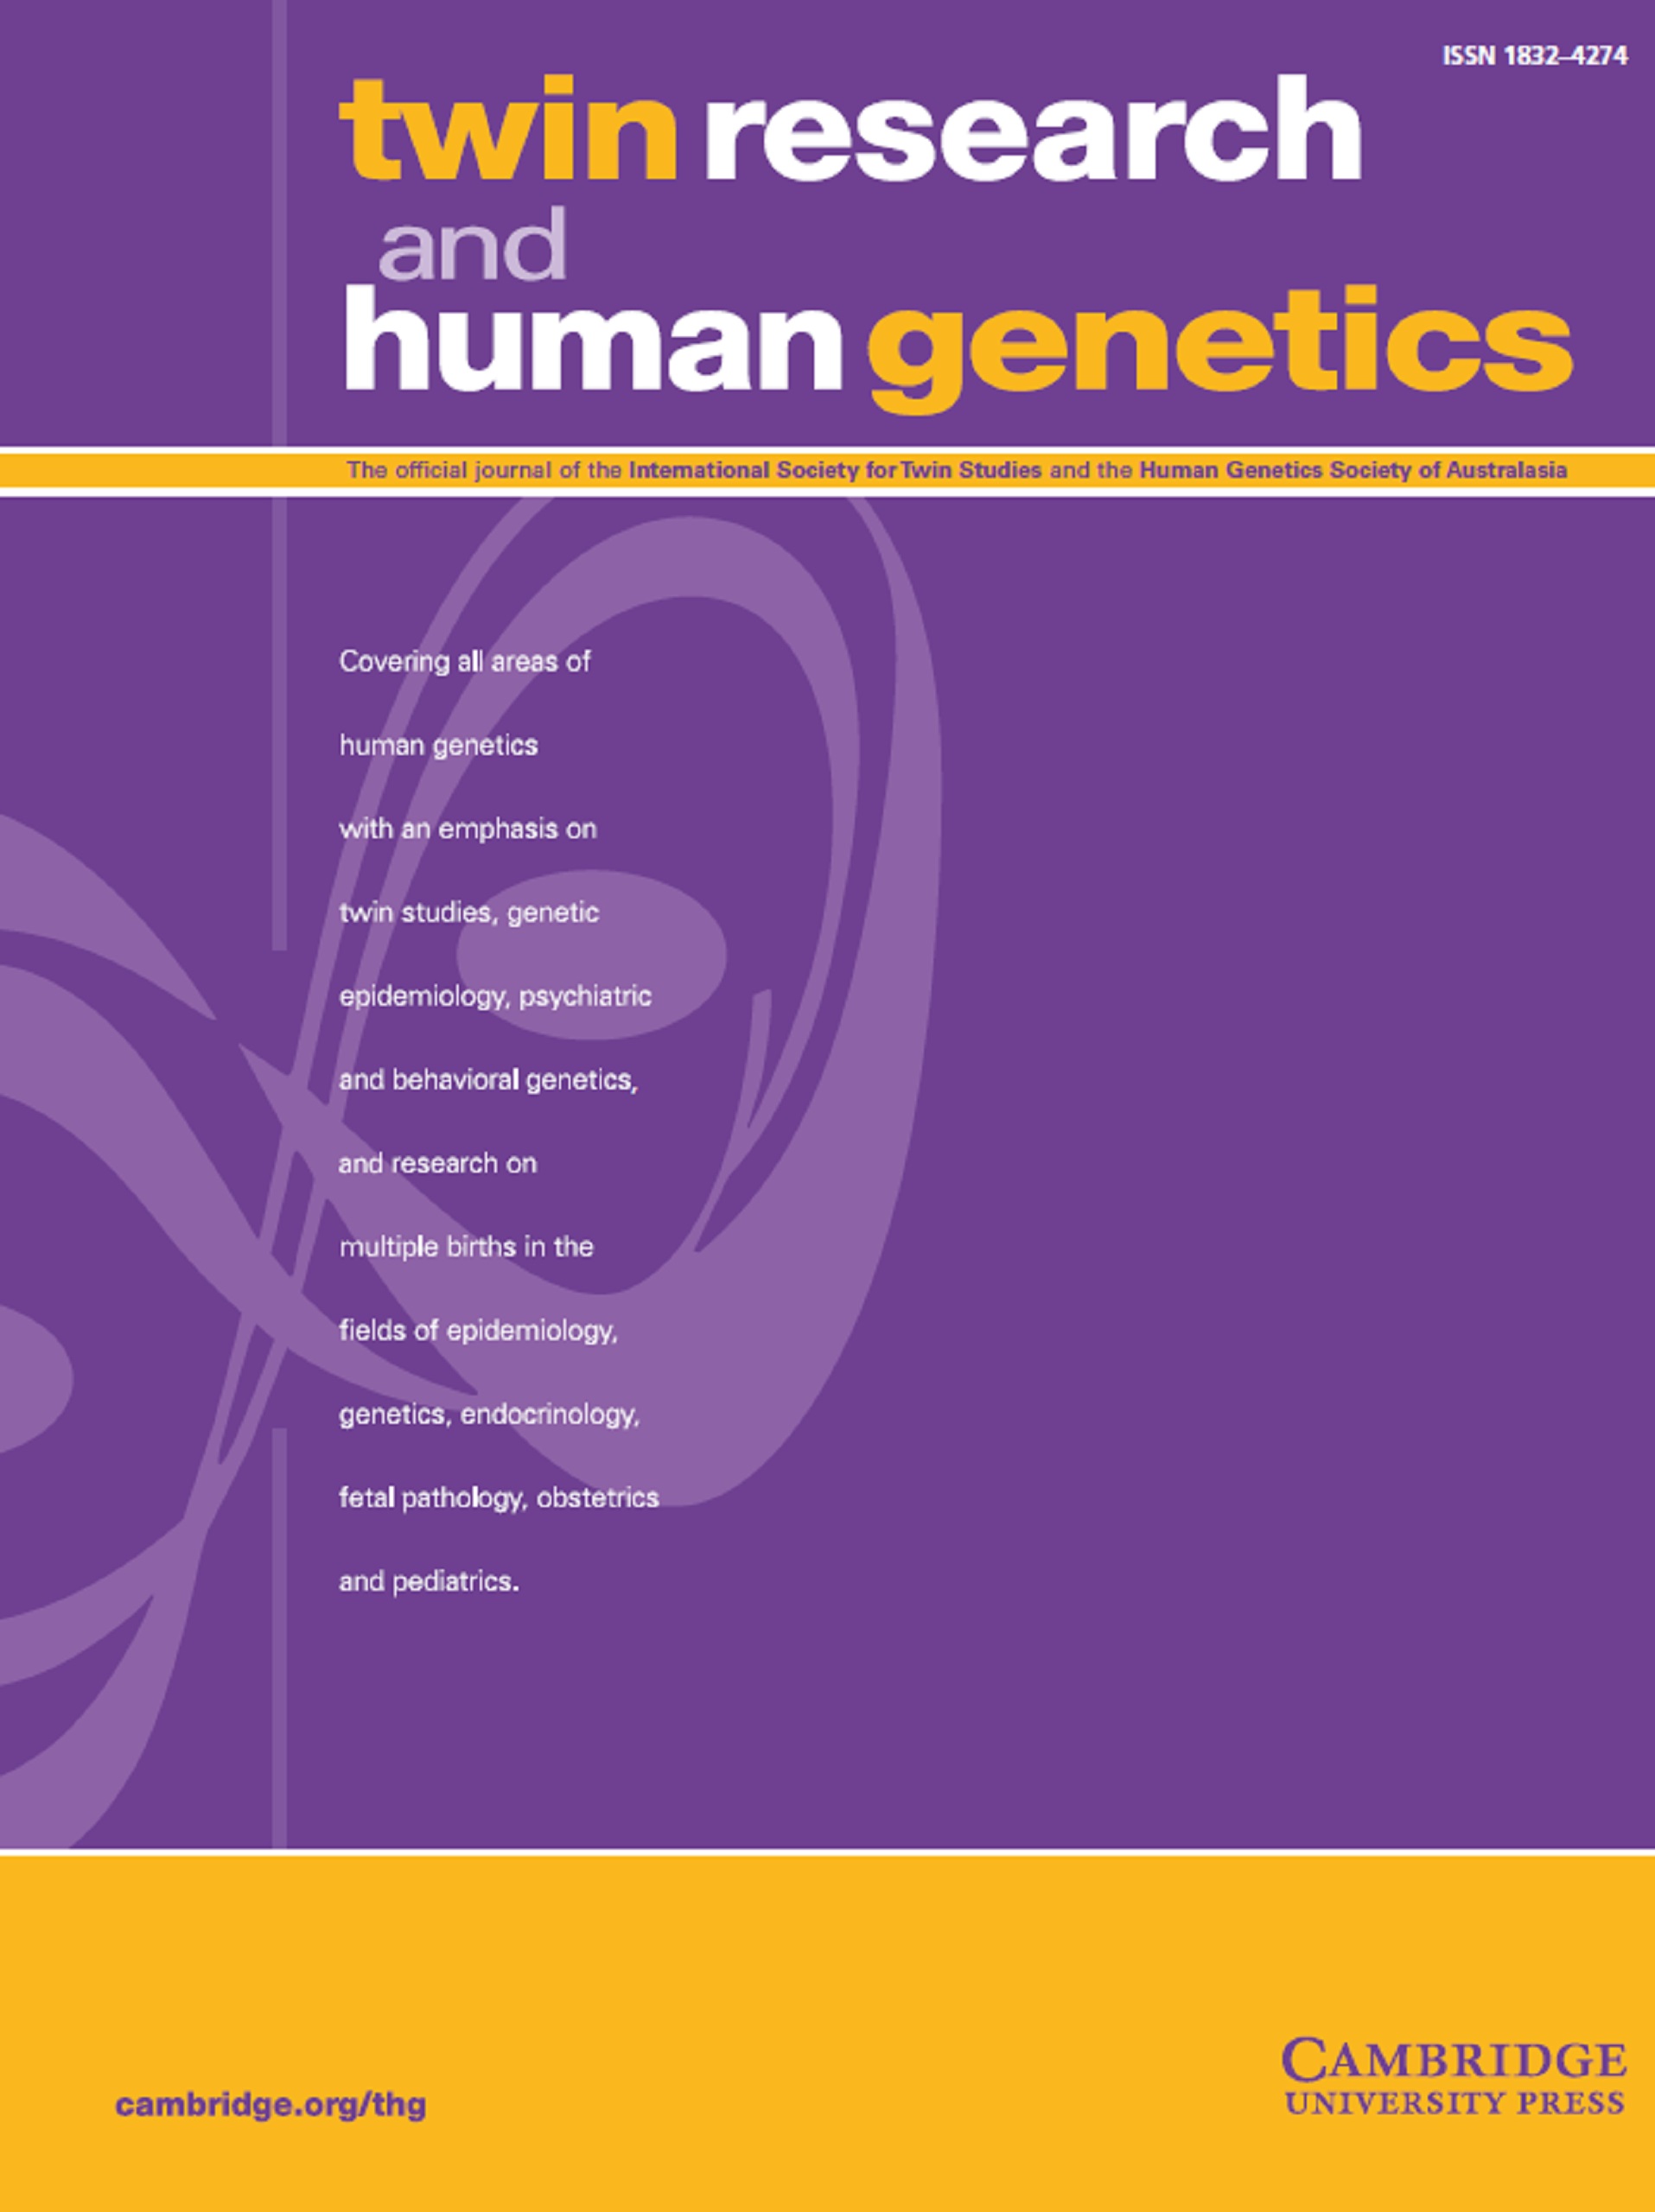 human genetics topics